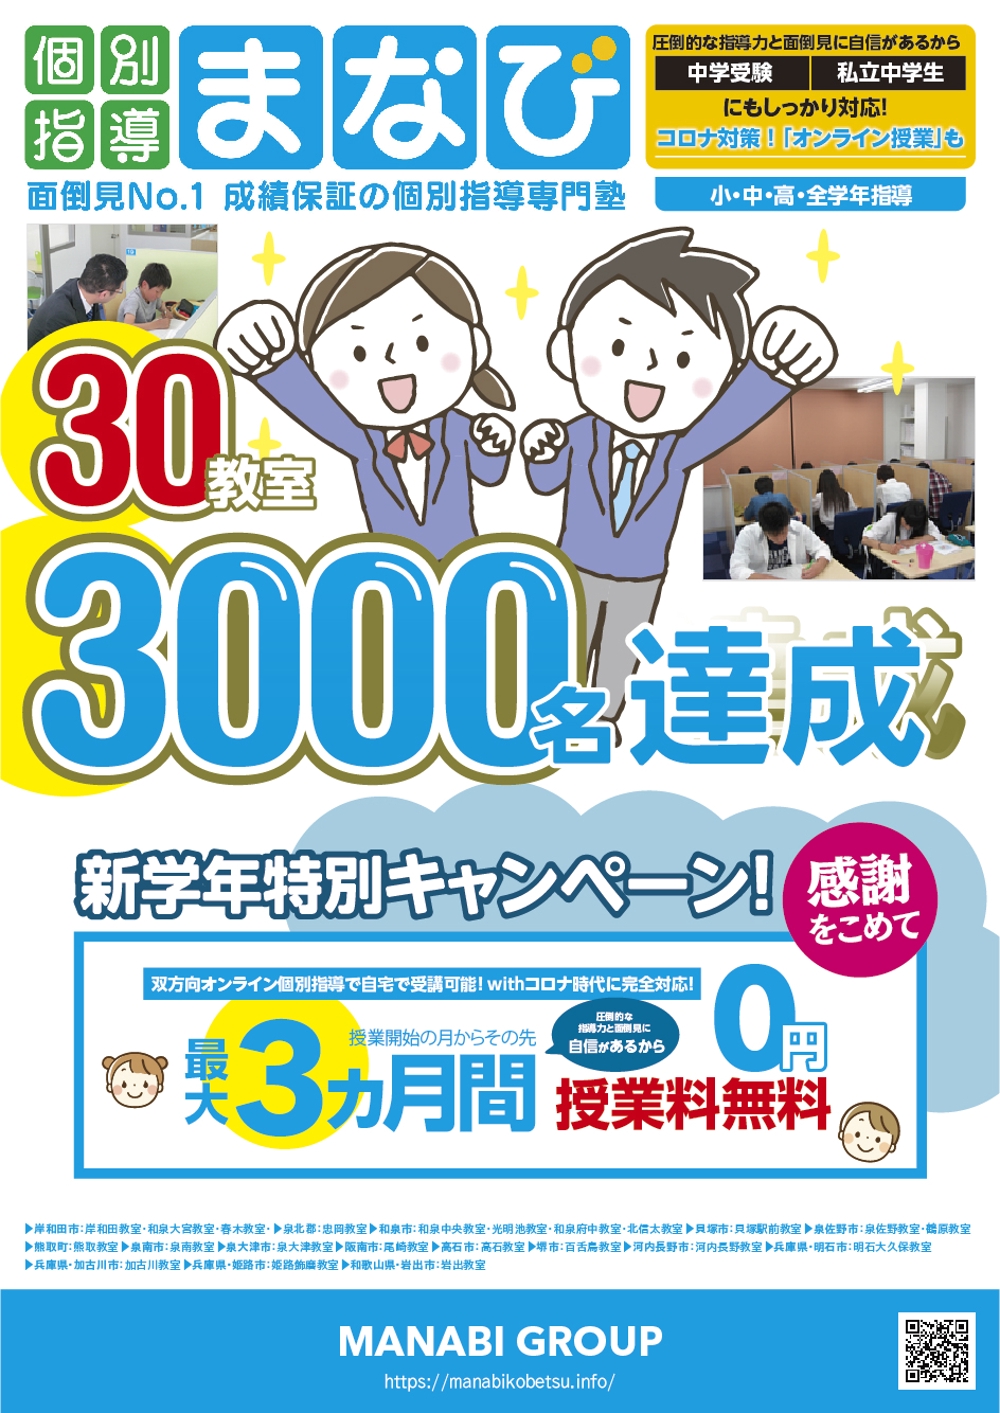 学習塾30教室・3000名達成-01.jpg